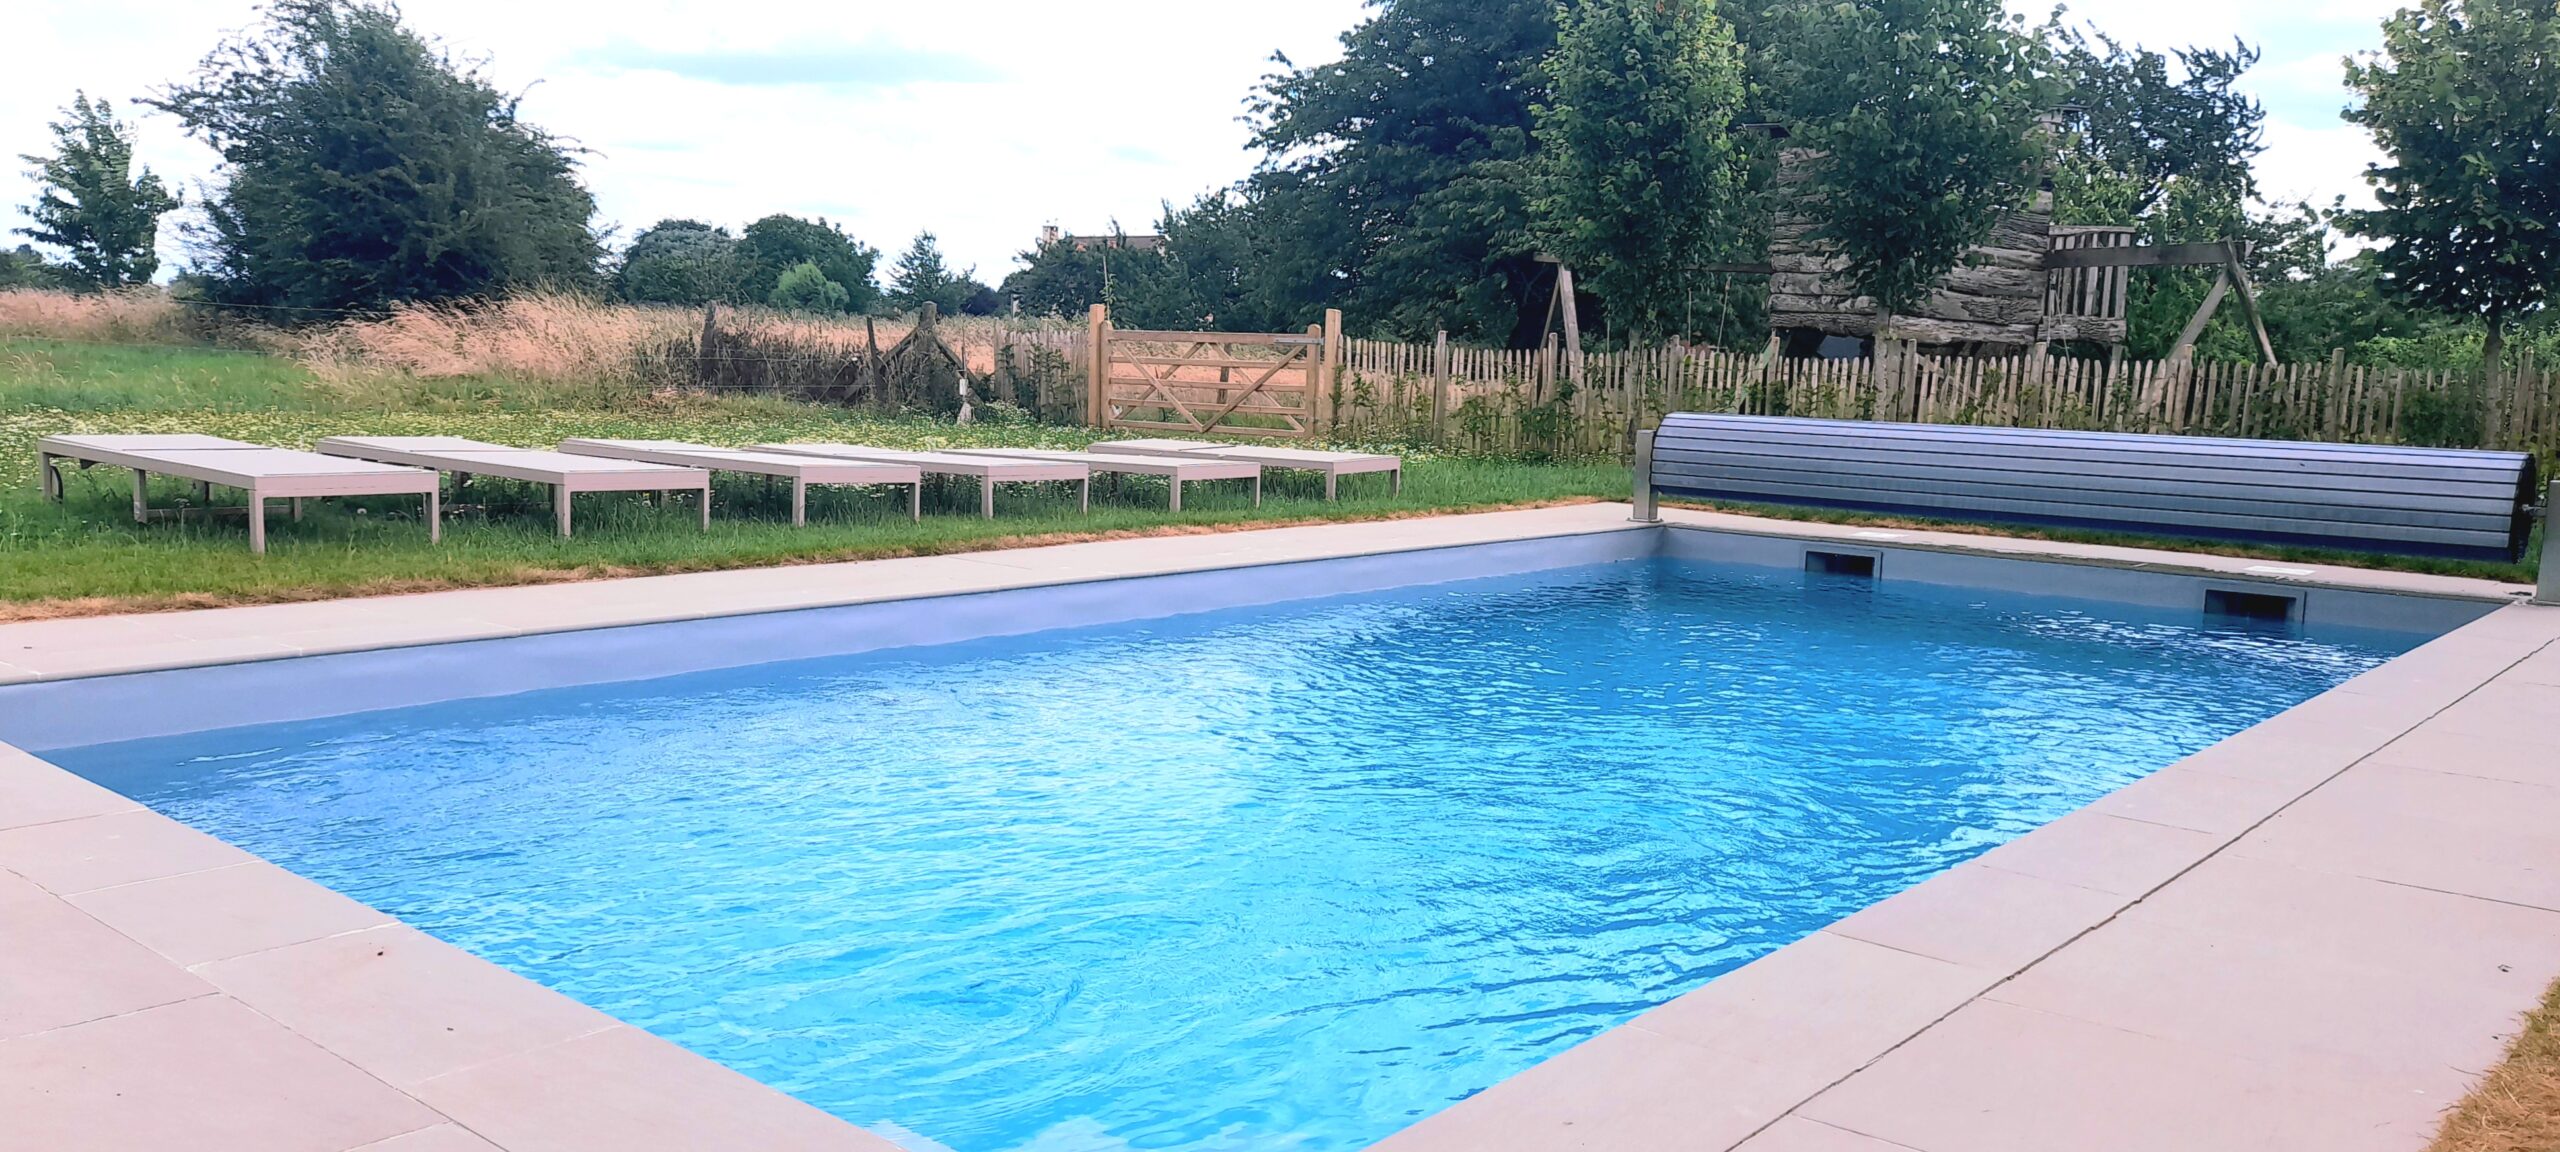 Gites et maisons de vacances à louer à Thorembais La piscine de la Cense de Baudecet 